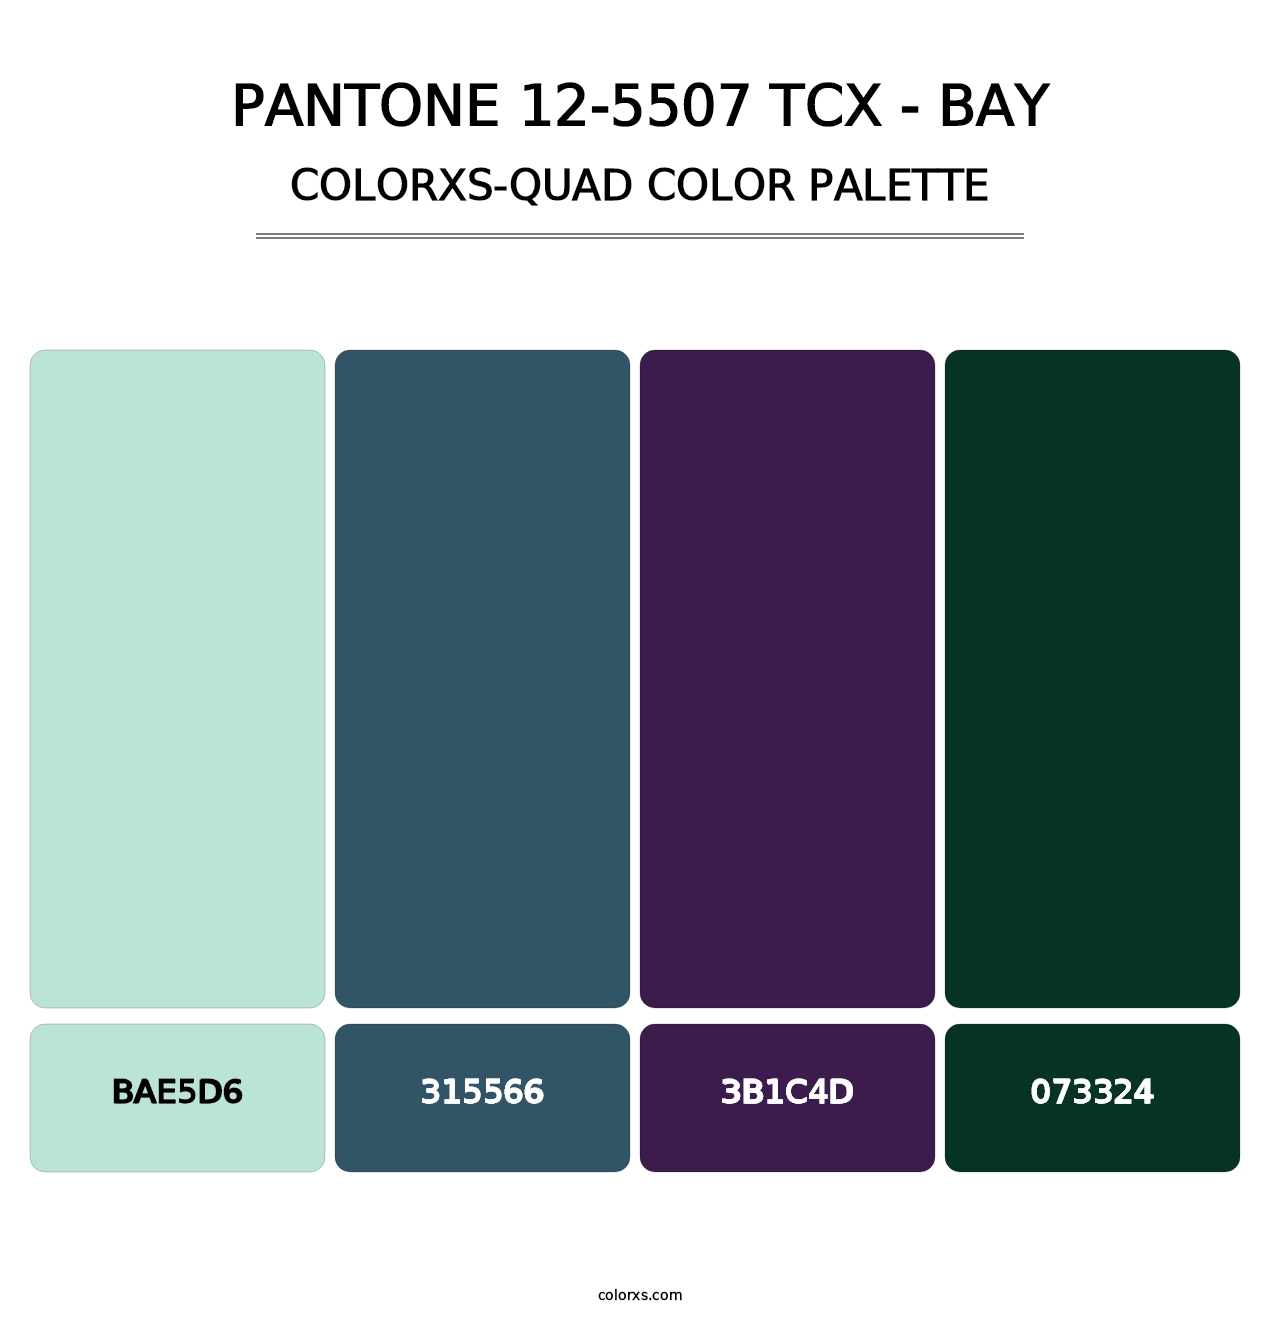 PANTONE 12-5507 TCX - Bay - Colorxs Quad Palette